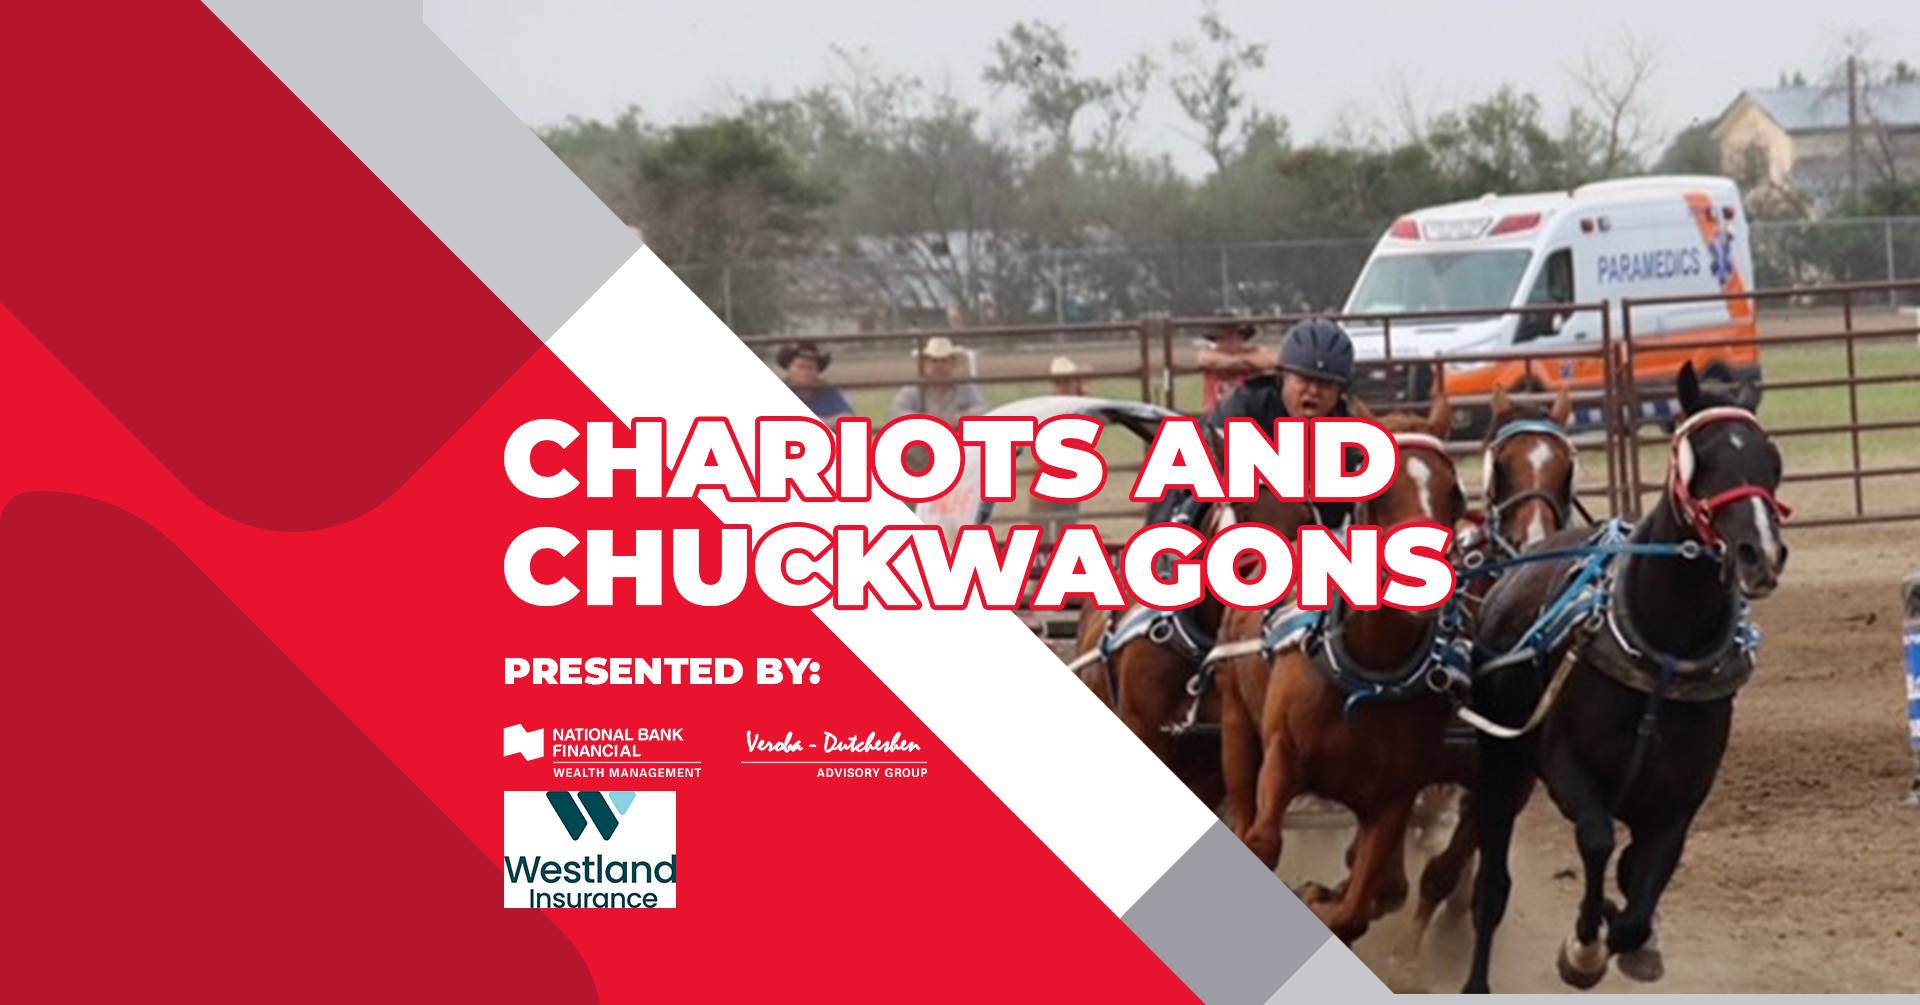 Chariots and Chuckwagons